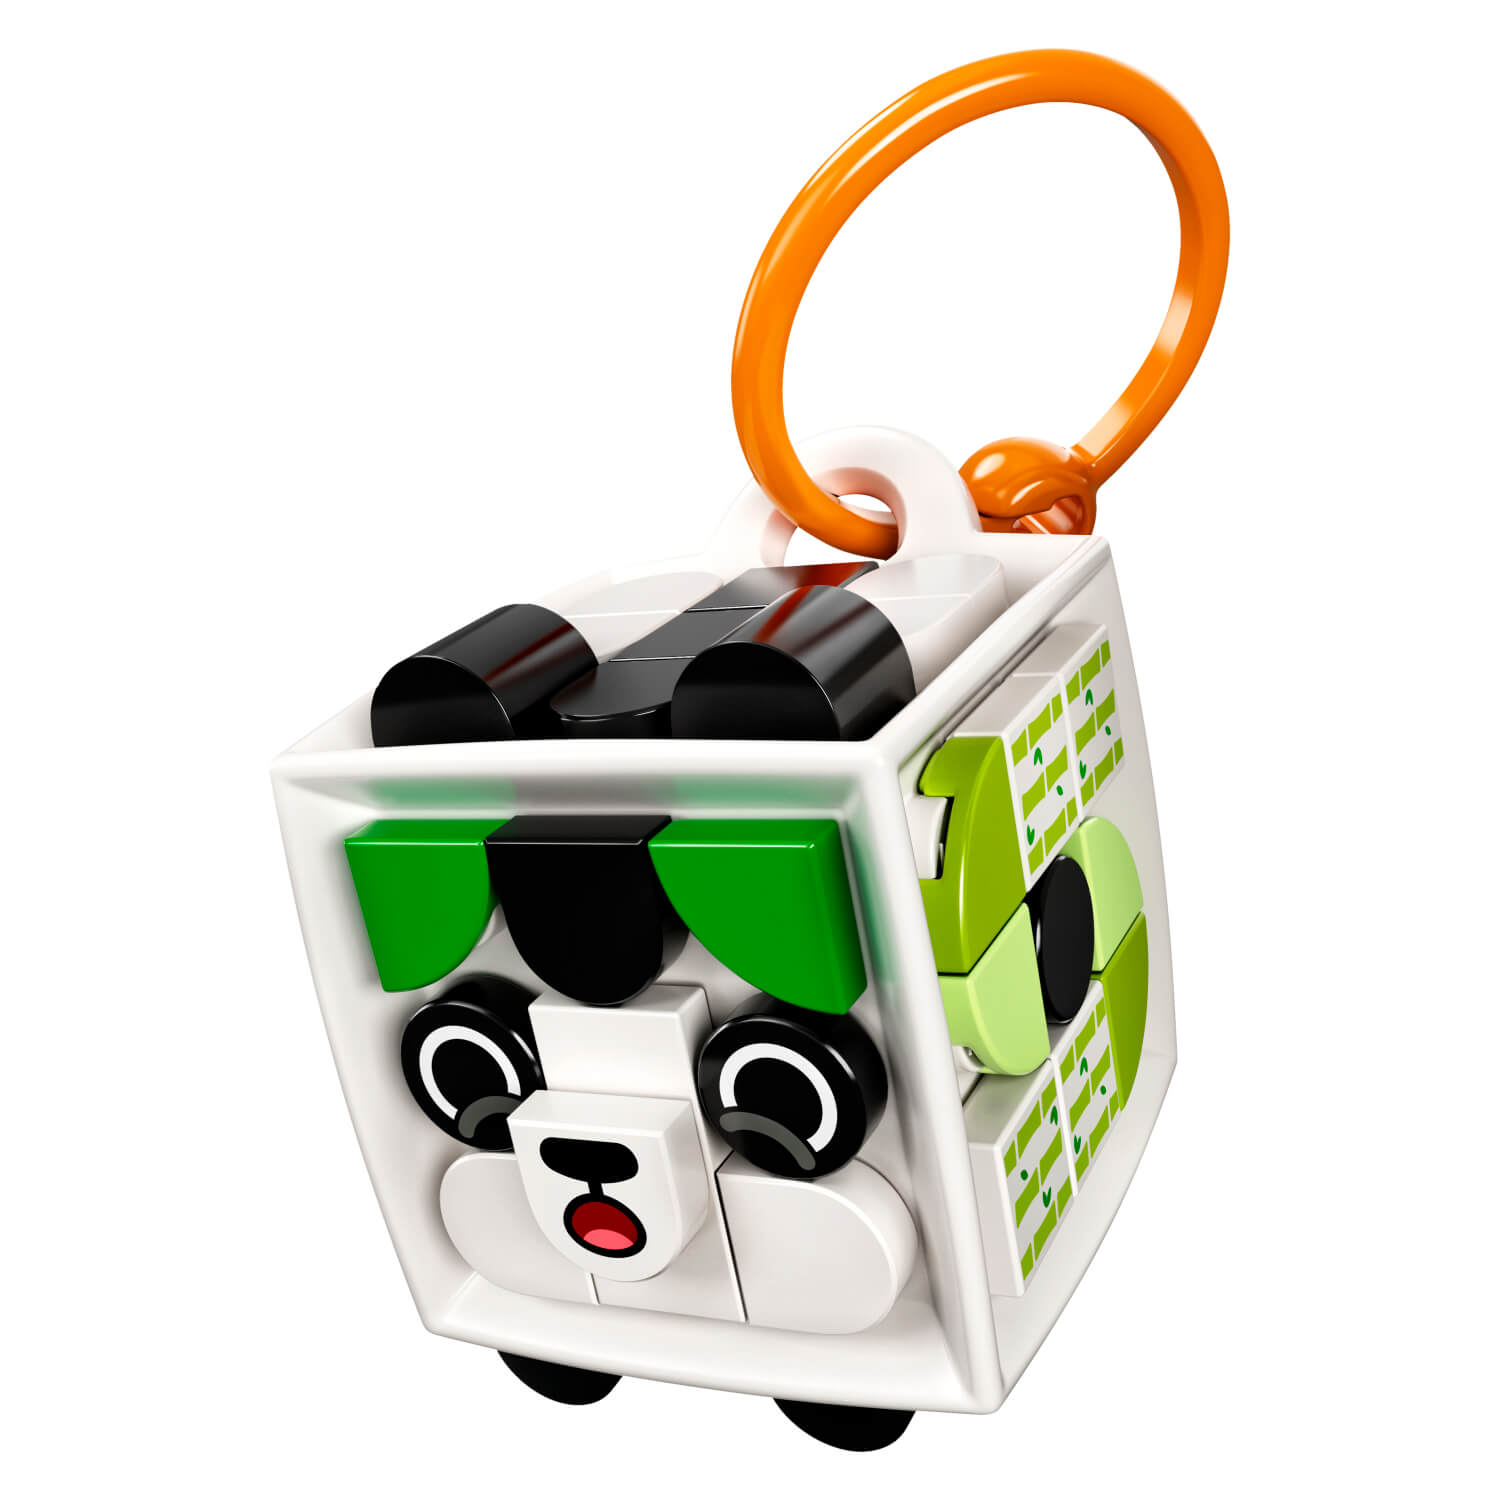 41930 Privjesak za torbe Panda